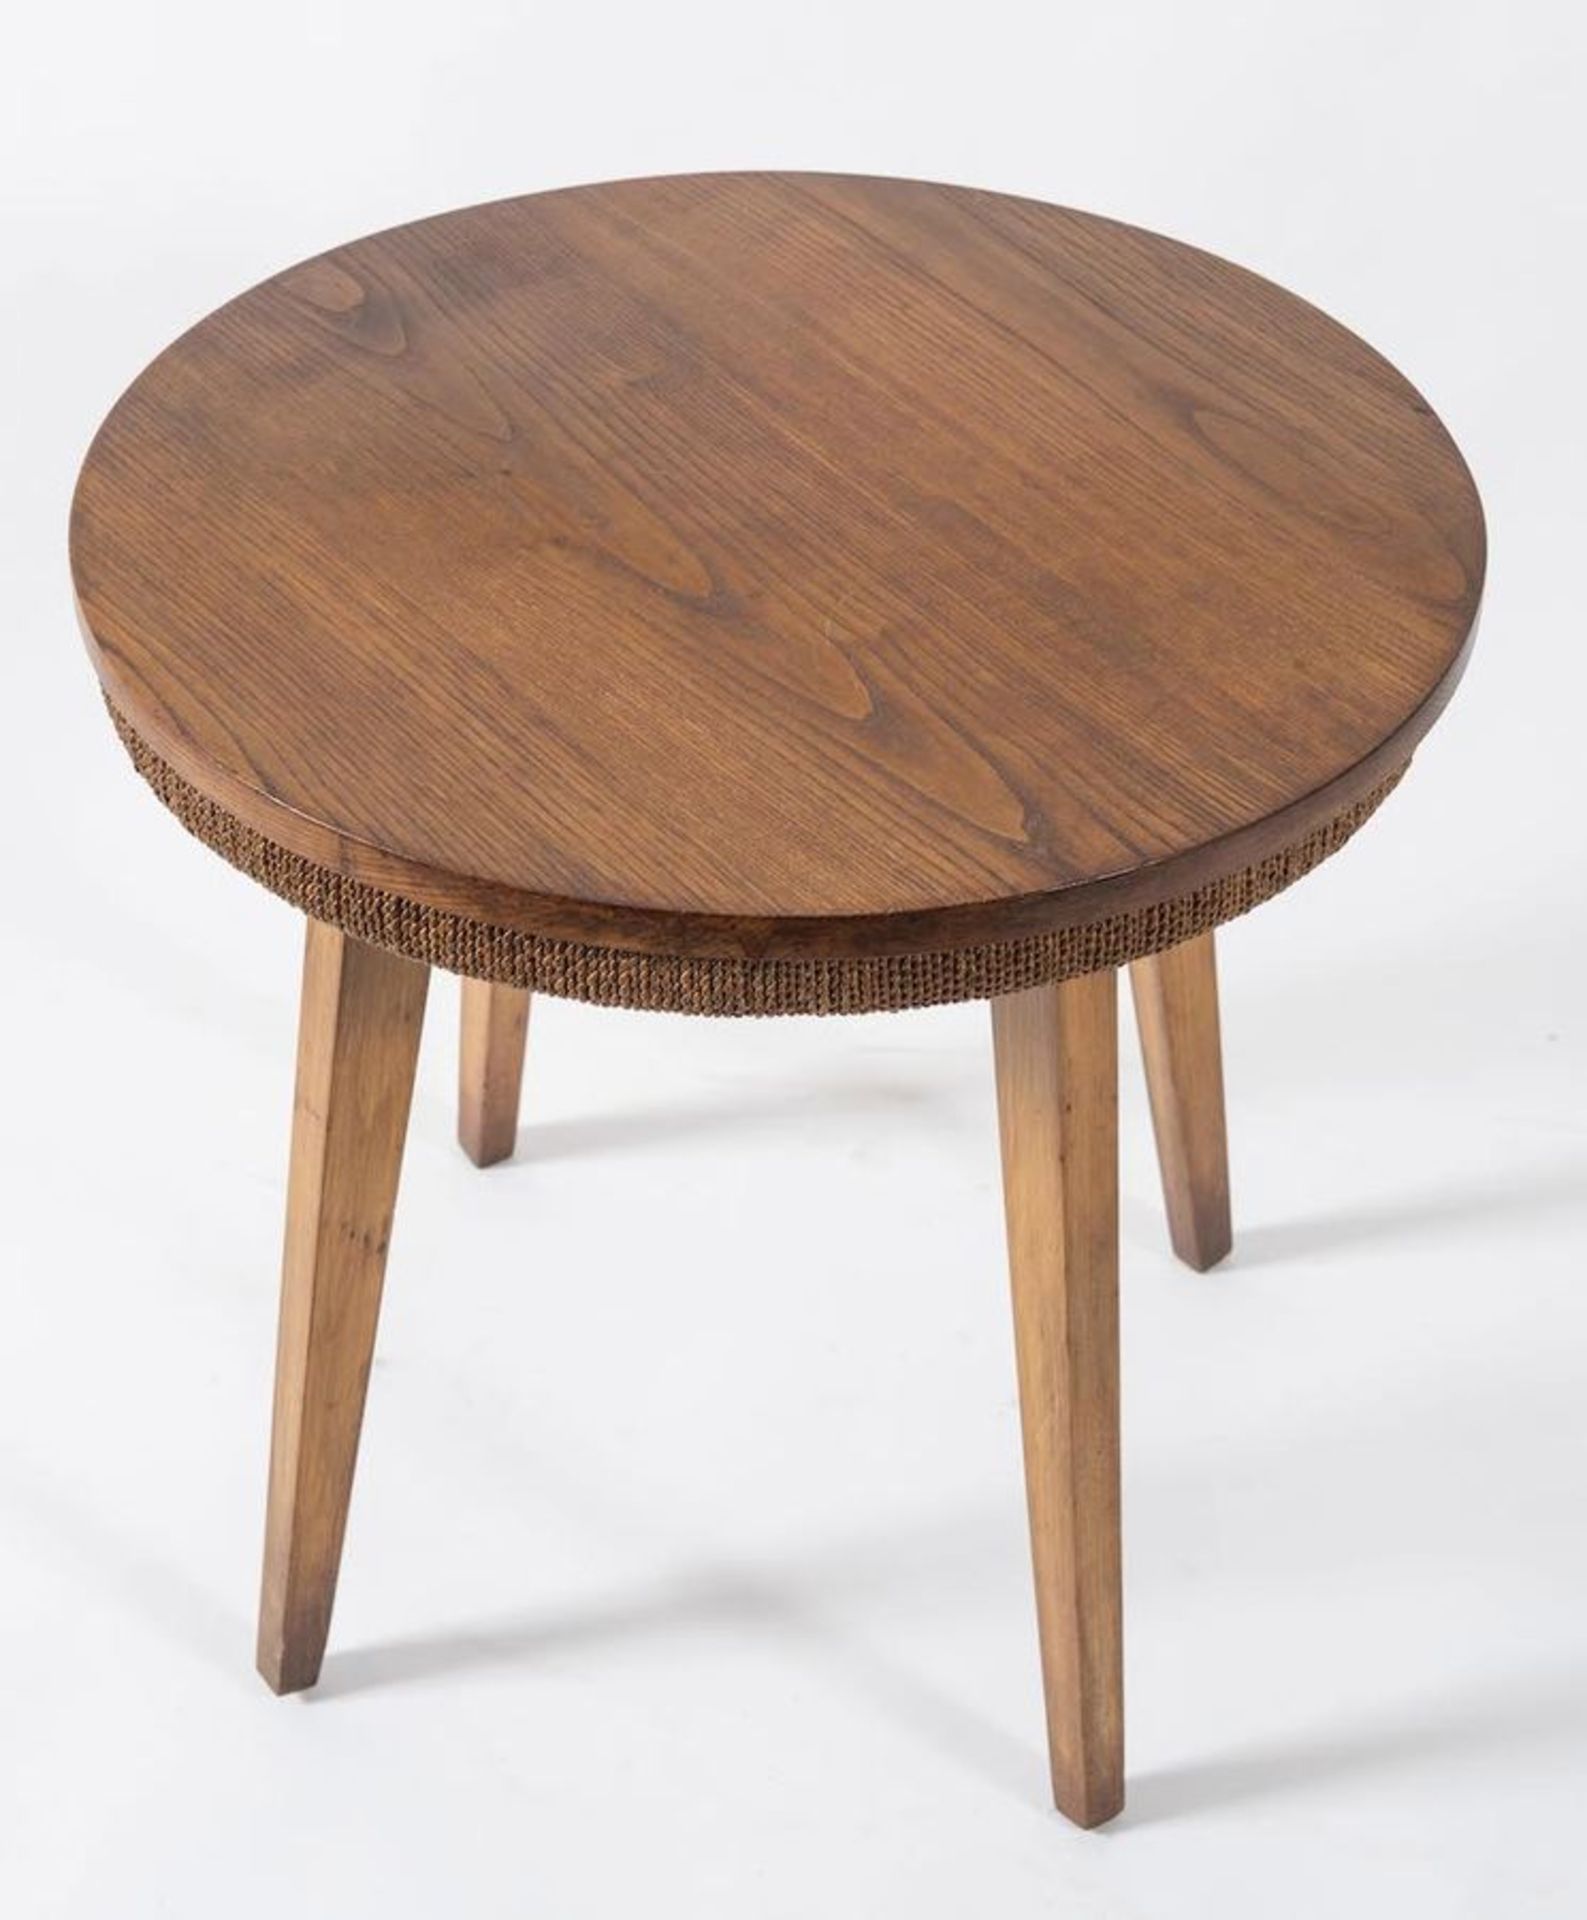 Tavolino in legno con decoro in corda. Prod. Italia, 1950 ca. Cm 55x60x60. - Image 2 of 2